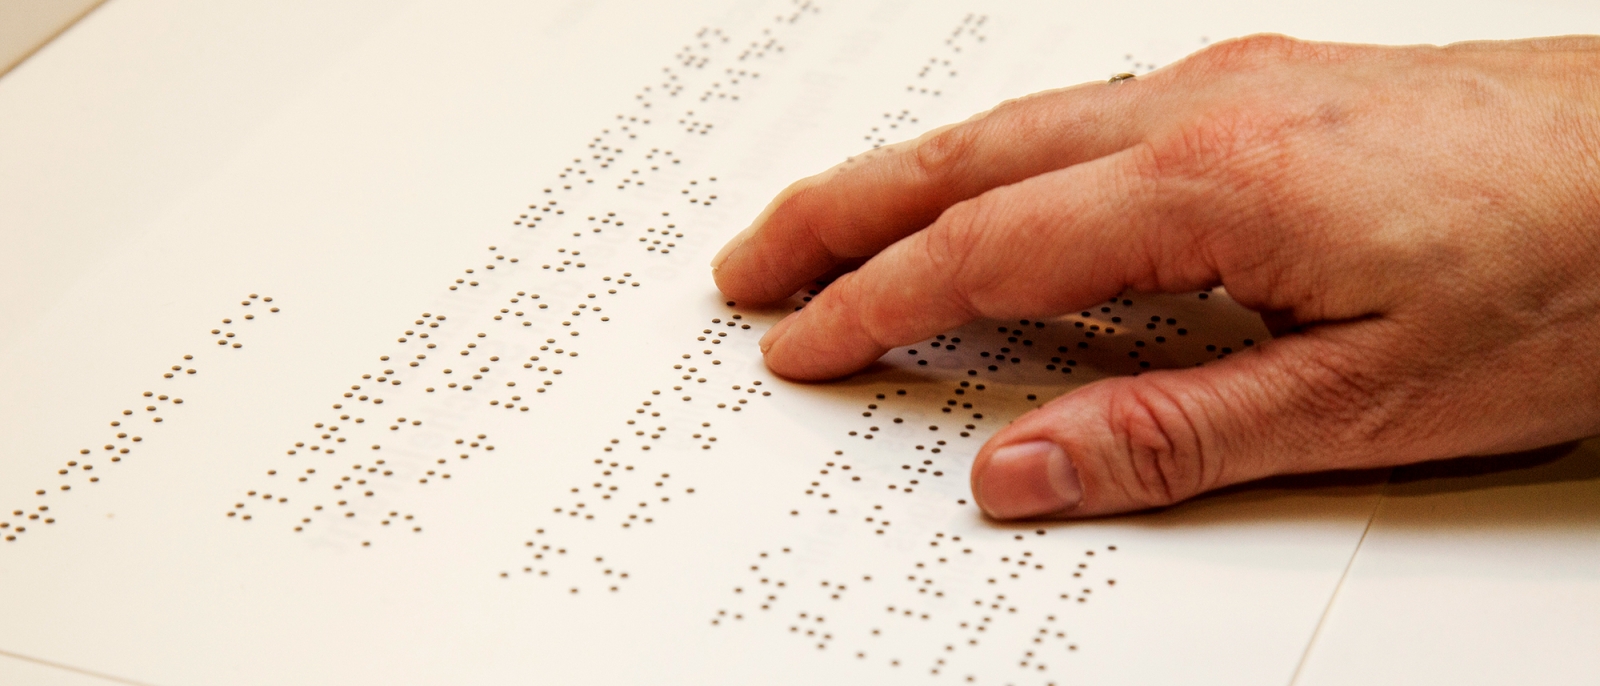 Hand reads Braille